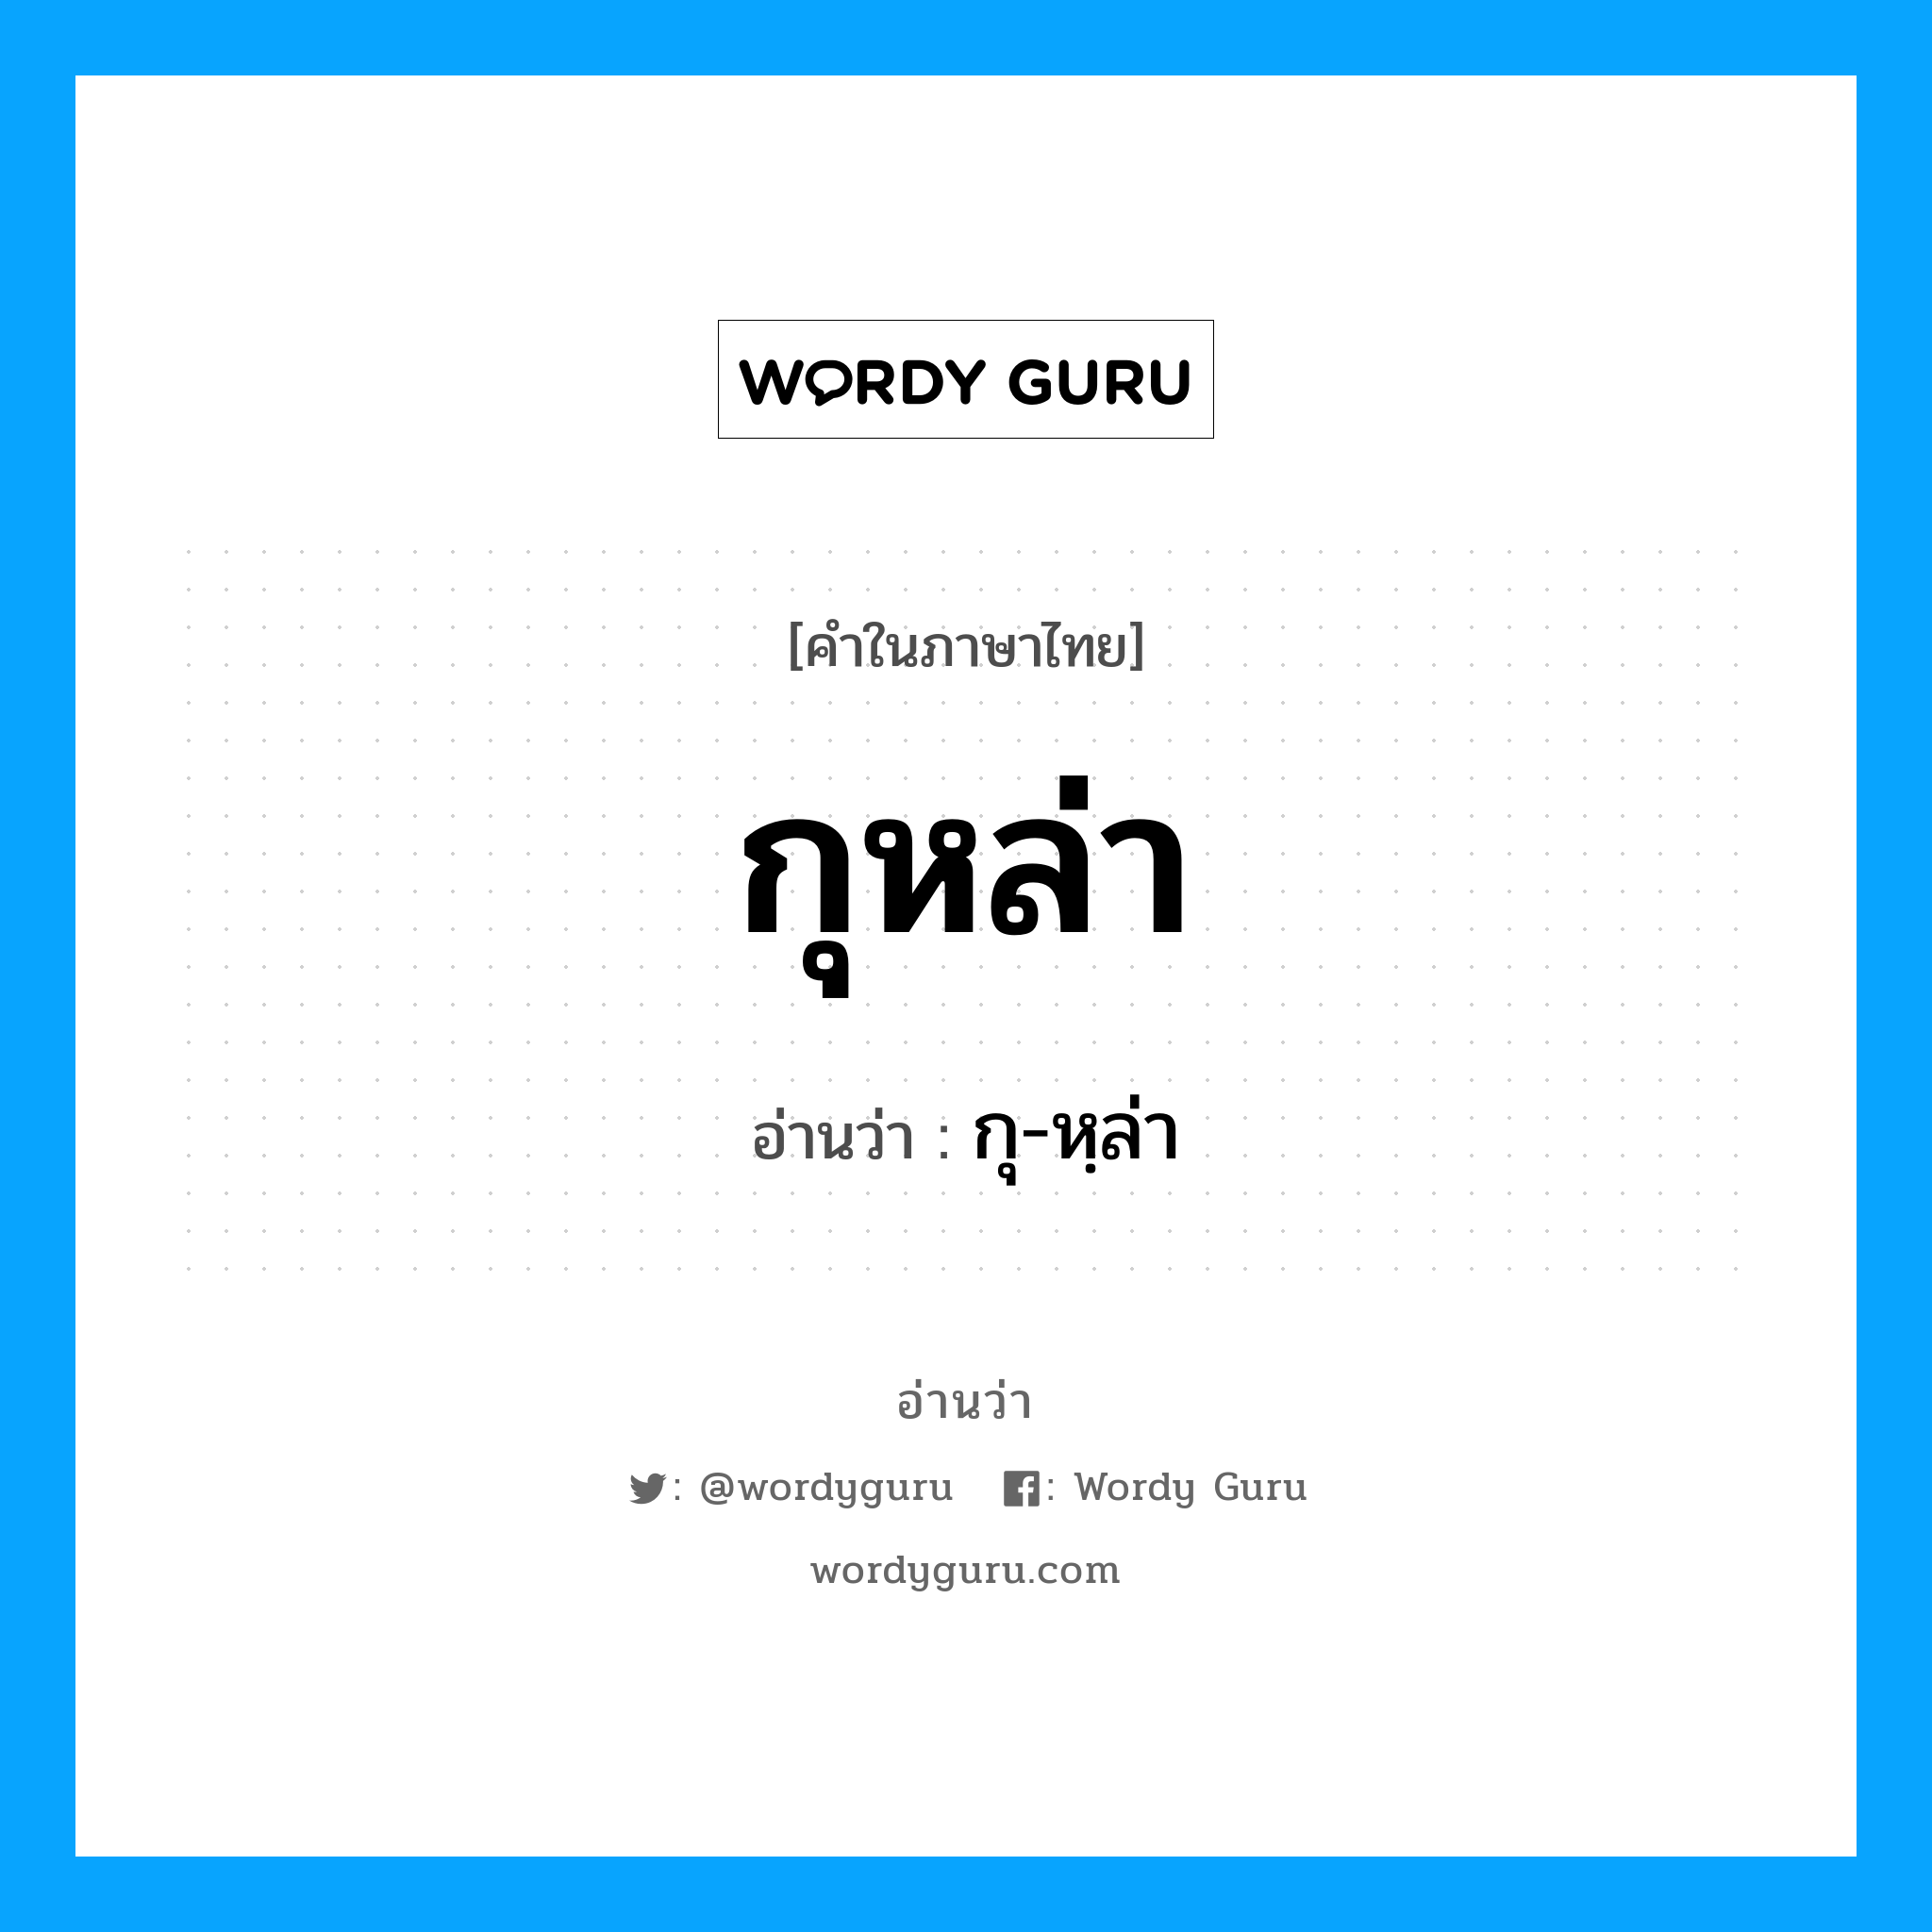 กุหล่า อ่านว่า?, คำในภาษาไทย กุหล่า อ่านว่า กุ-หฺล่า